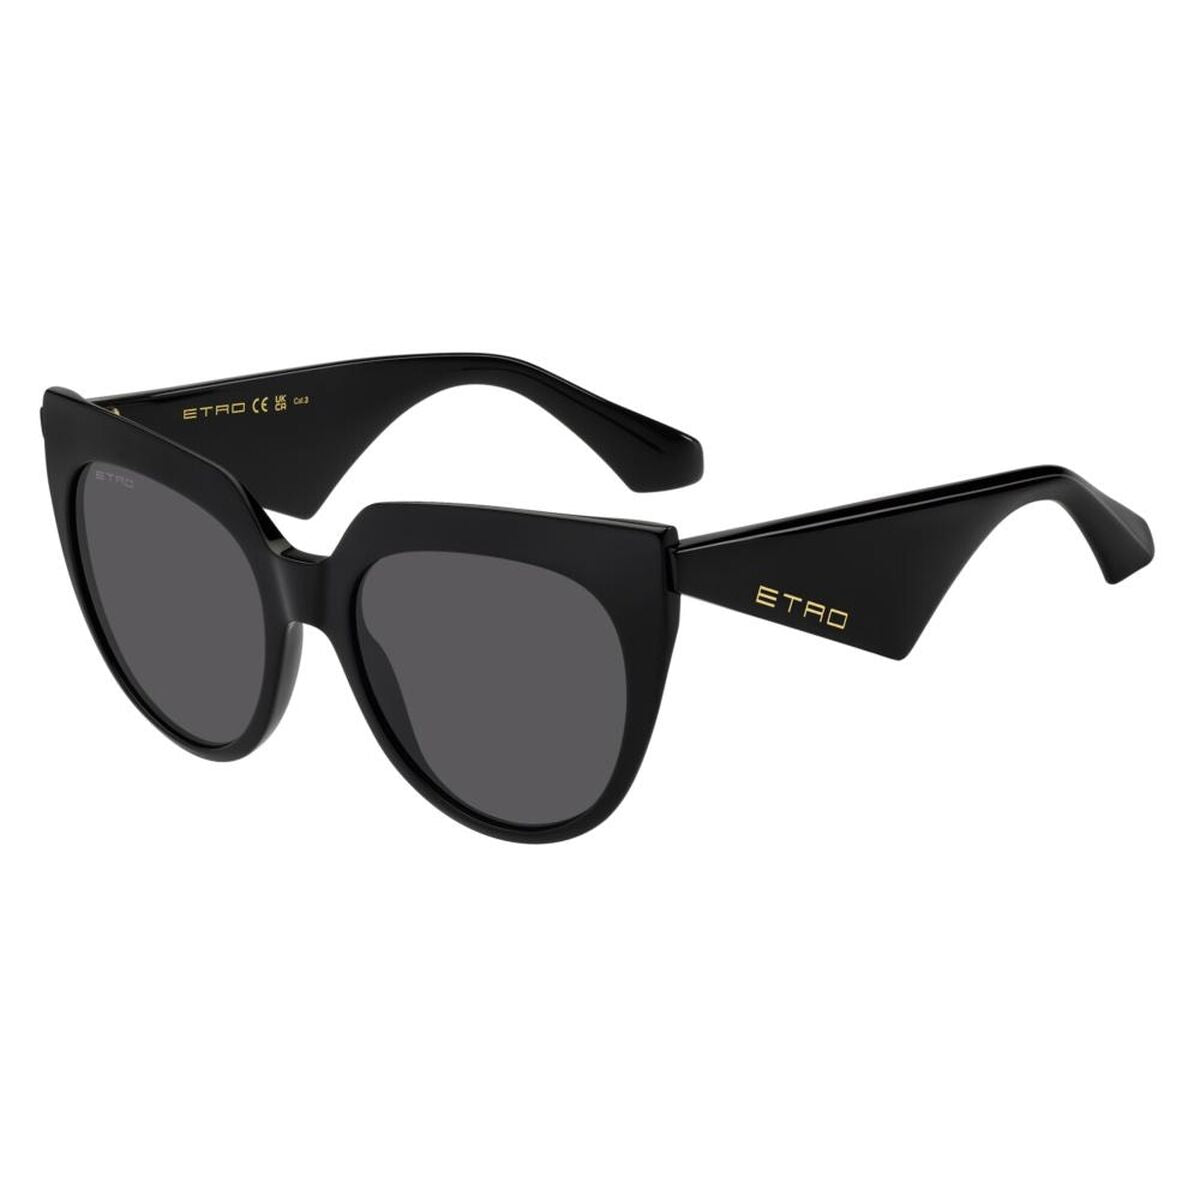 Kaufe Damensonnenbrille Etro ETRO 0003_S bei AWK Flagship um € 204.00